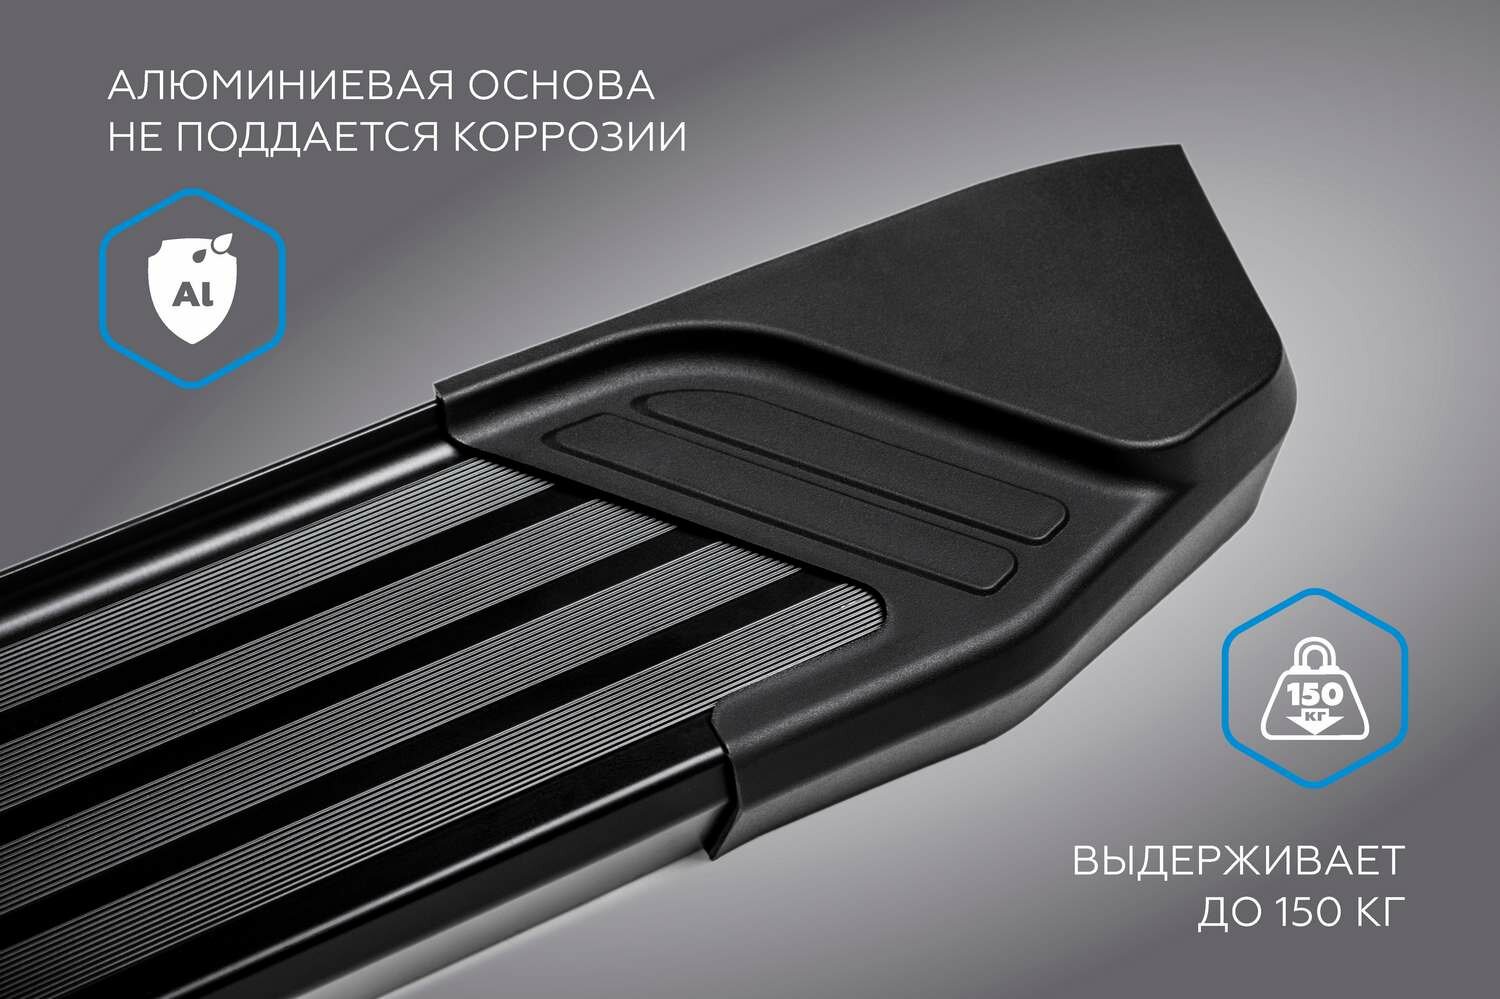 Пороги на автомобиль "Black" Rival для Lada Niva Travel 2021-н в 160 2  алюминий F160ALB60061